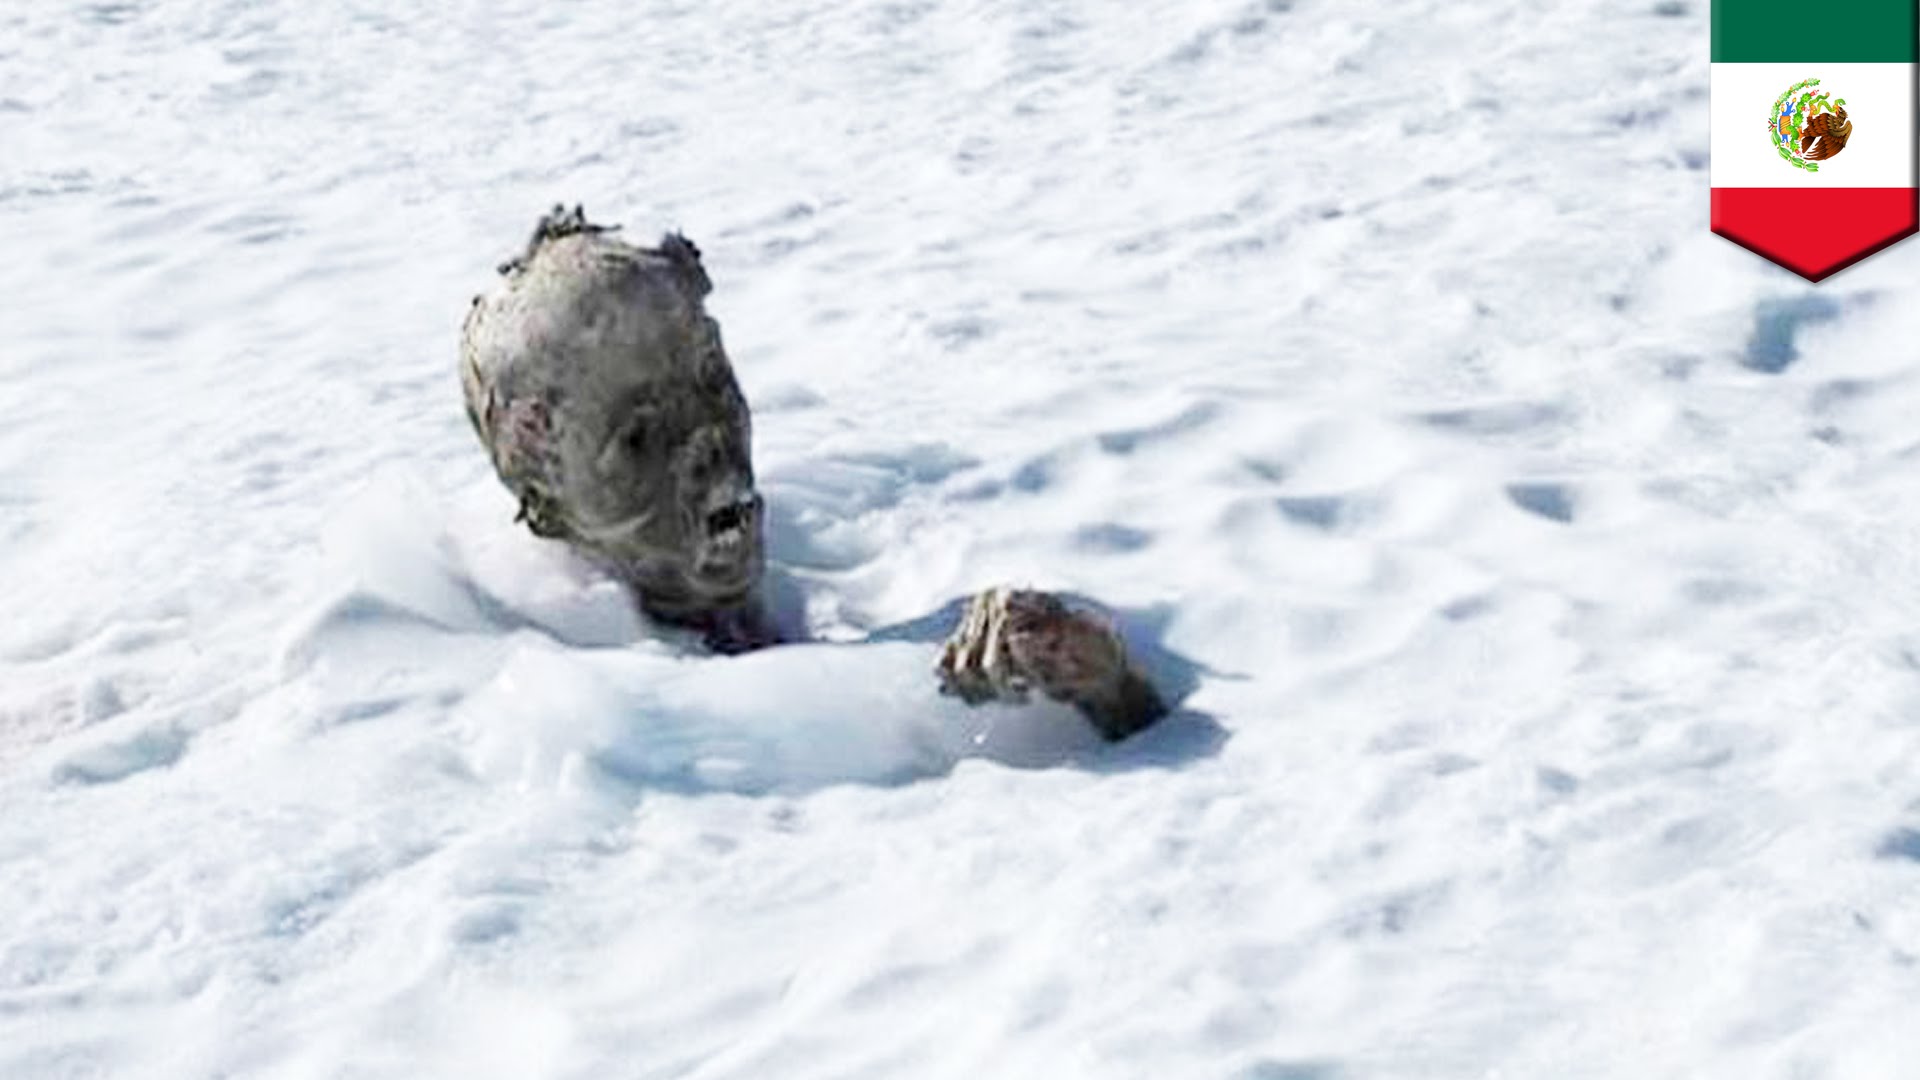 Mummified body found Mexico's tallest mountain, Pico de Orizaba ...